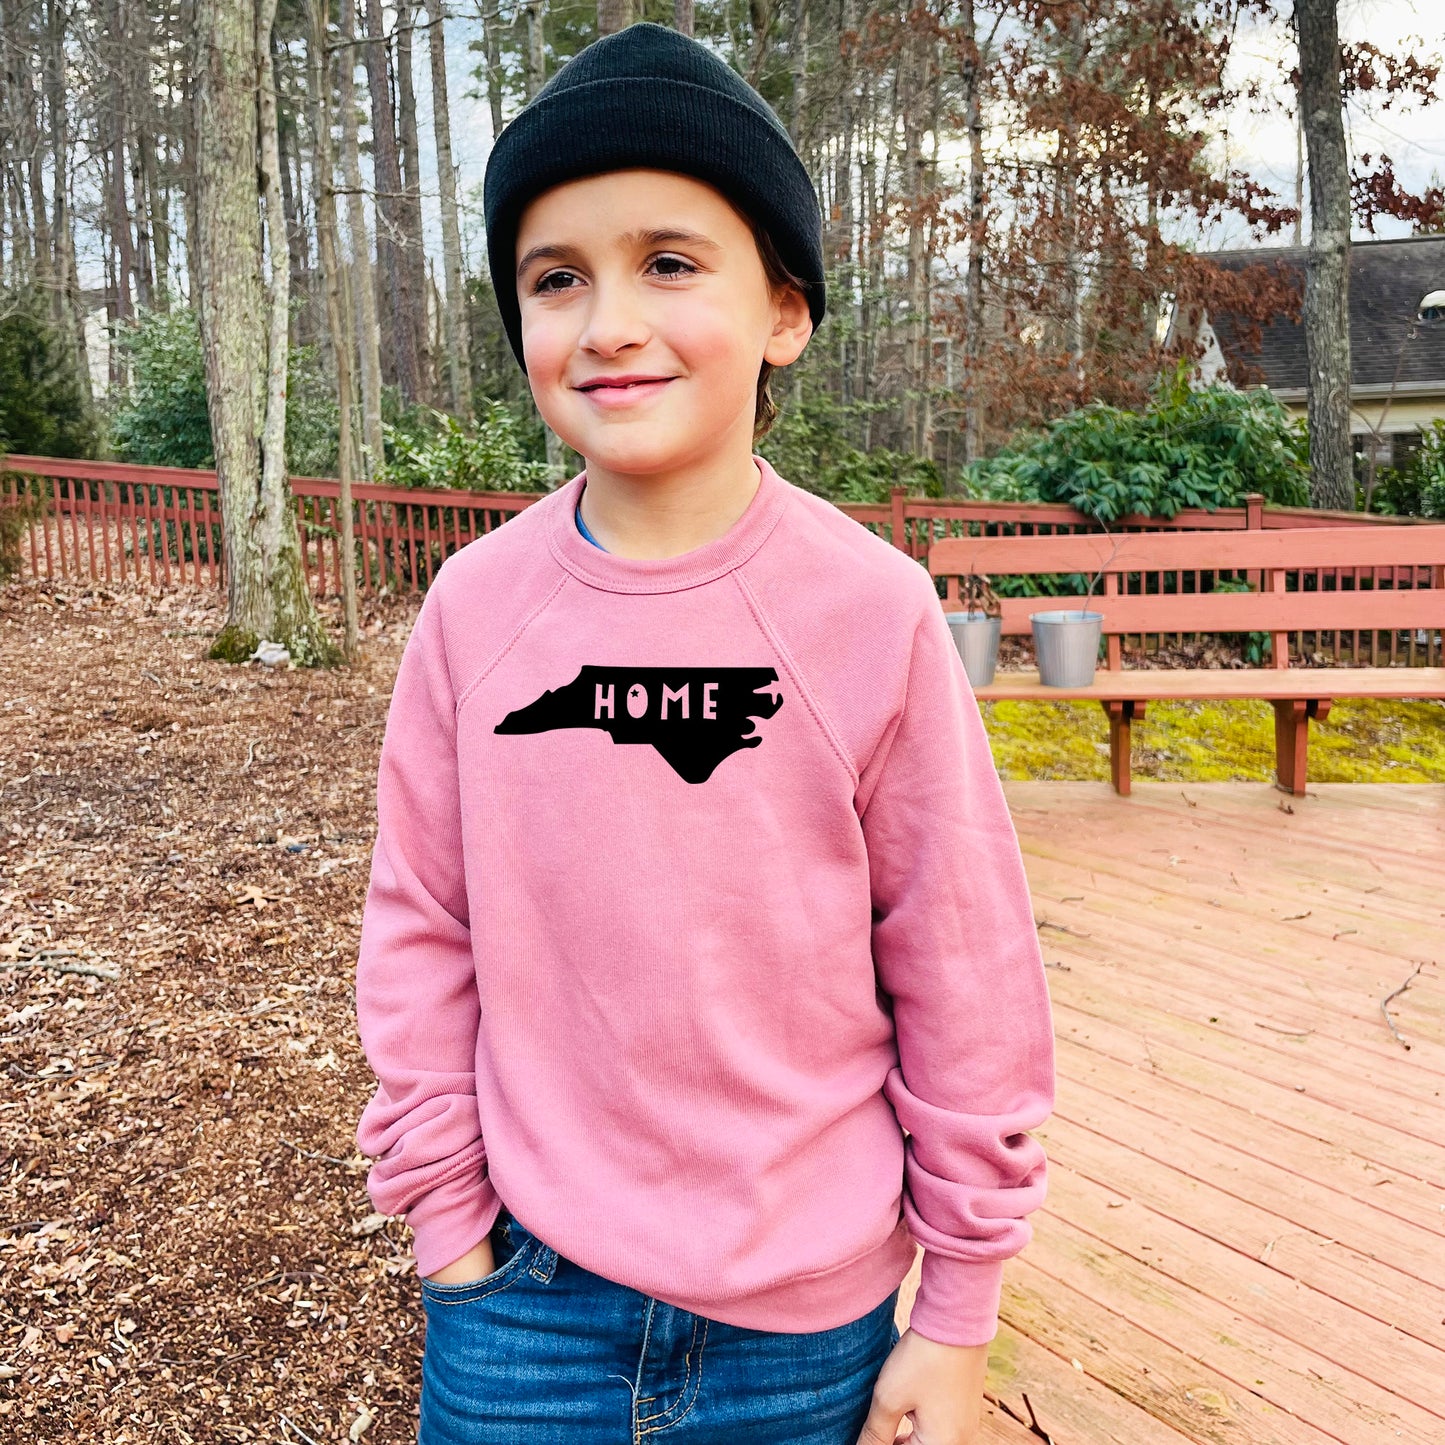 Home (North Carolina) - Kid's Sweatshirt - Heather Gray or Mauve